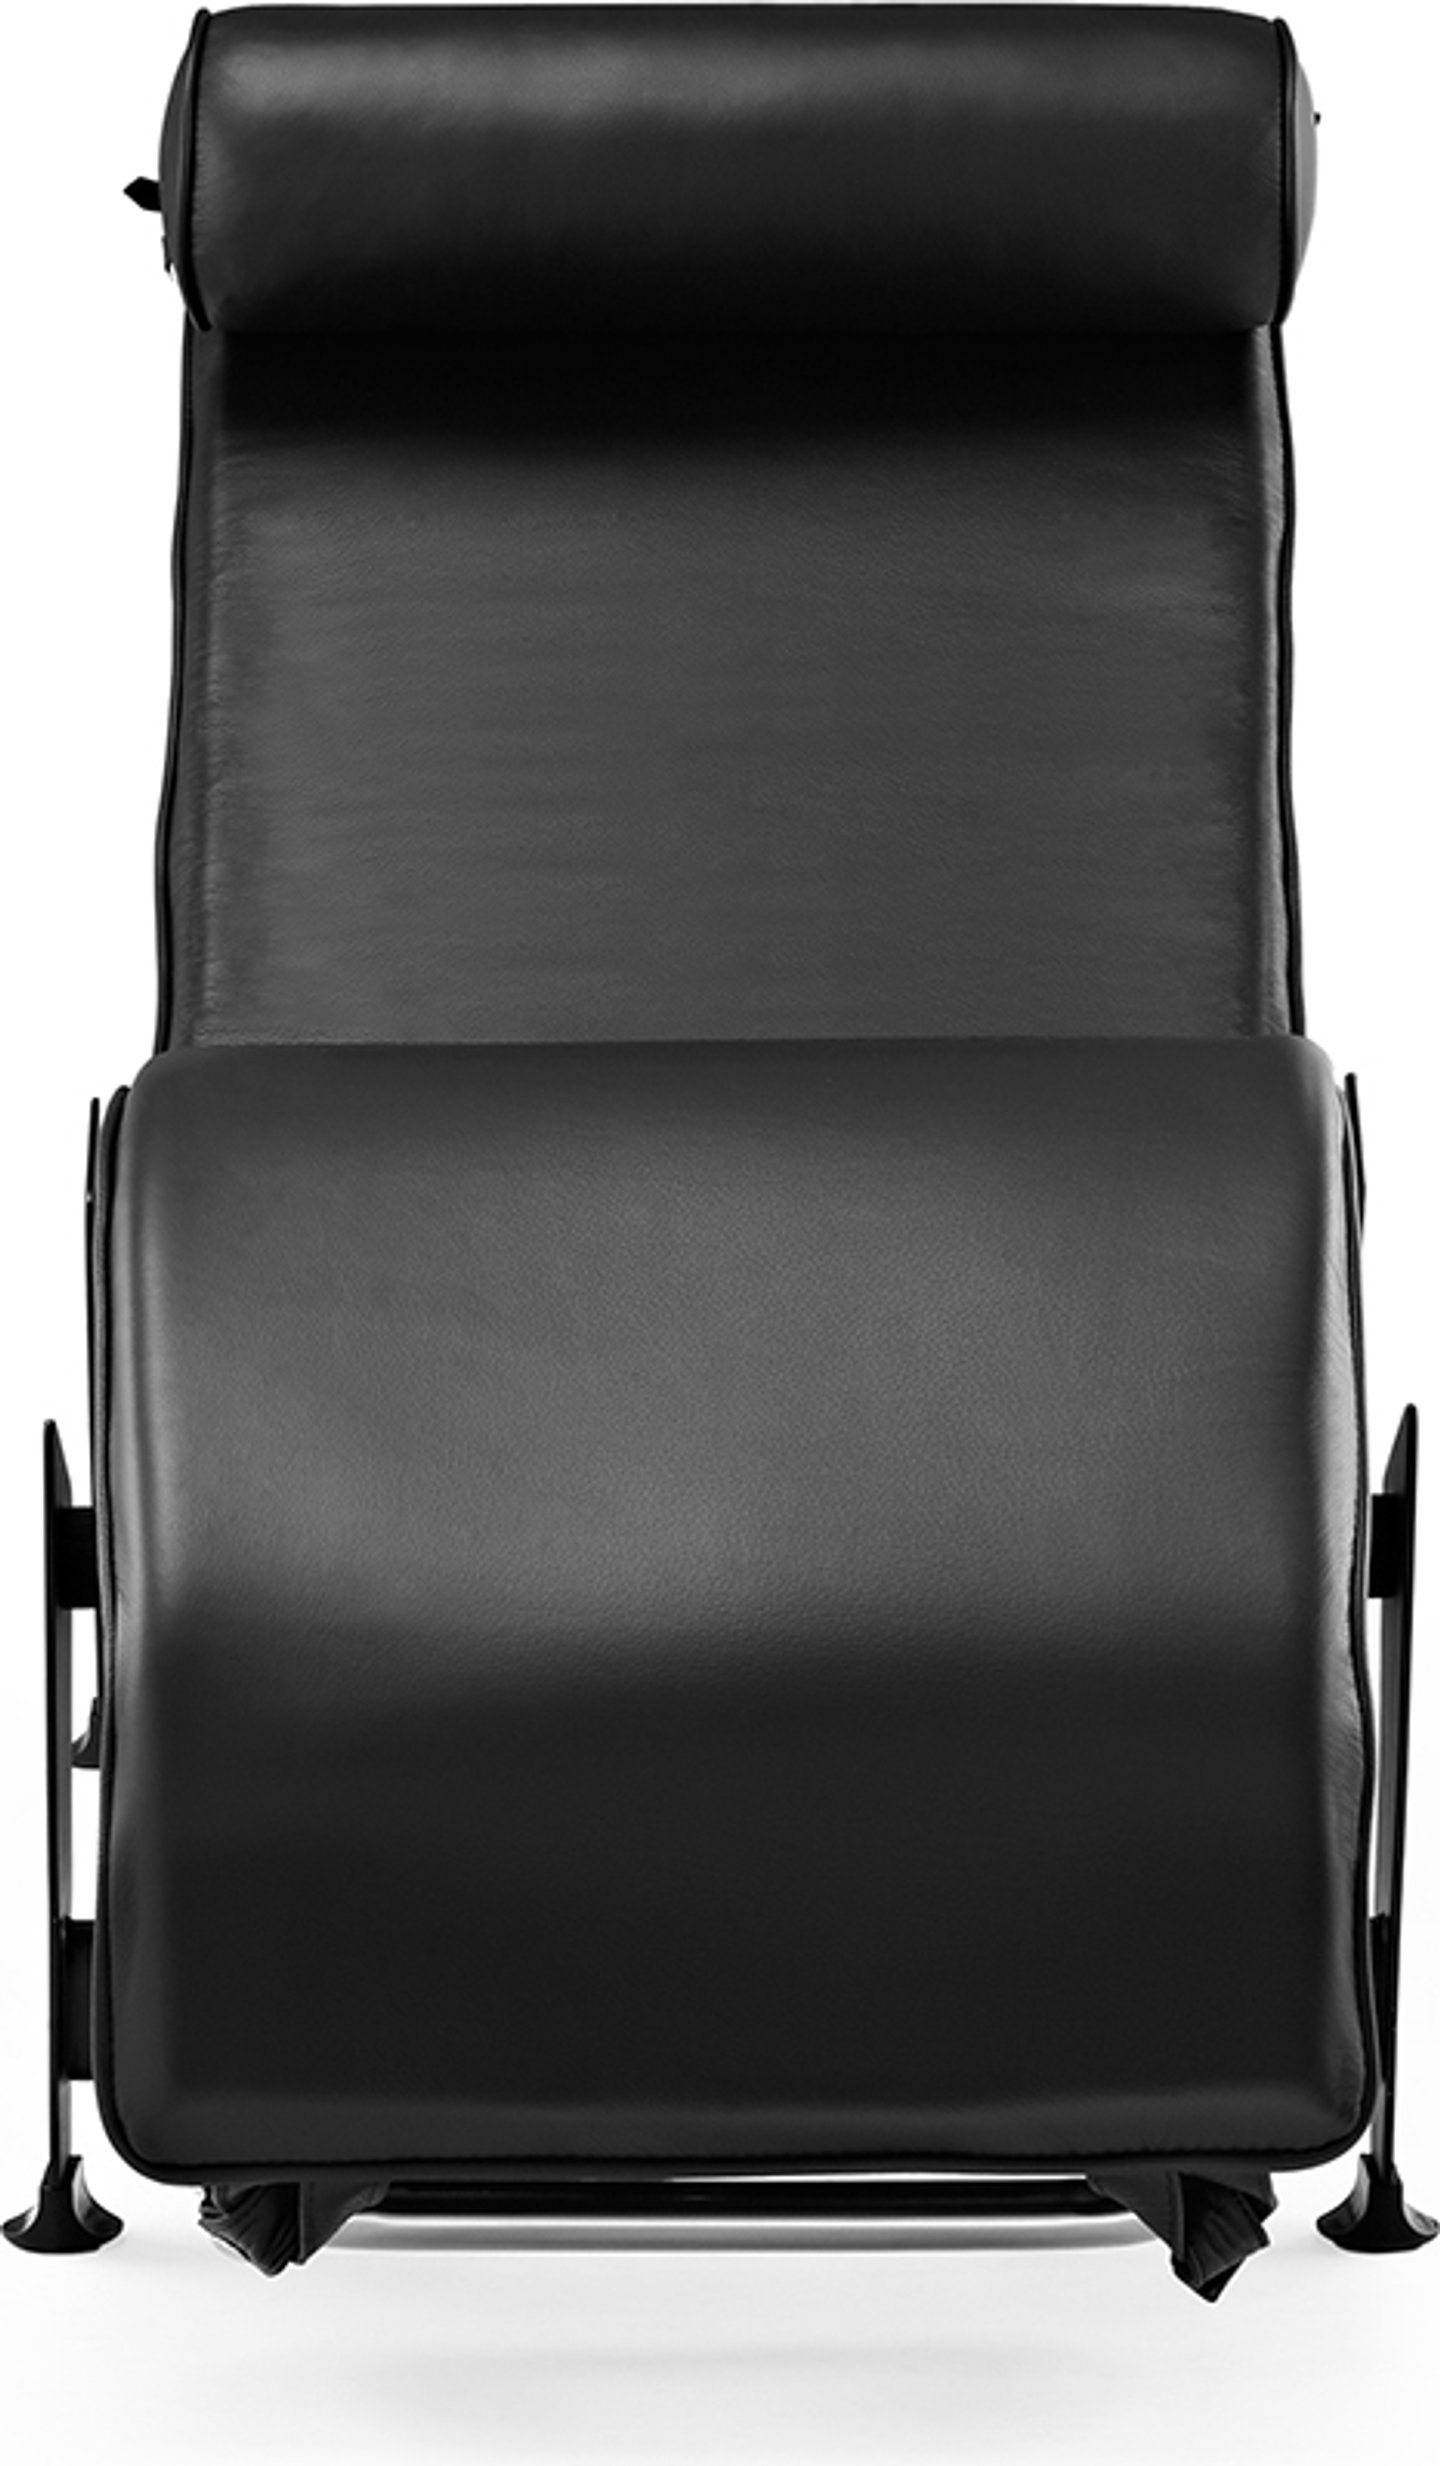 Chaise longue estilo LC4 Premium Leather/Black image.